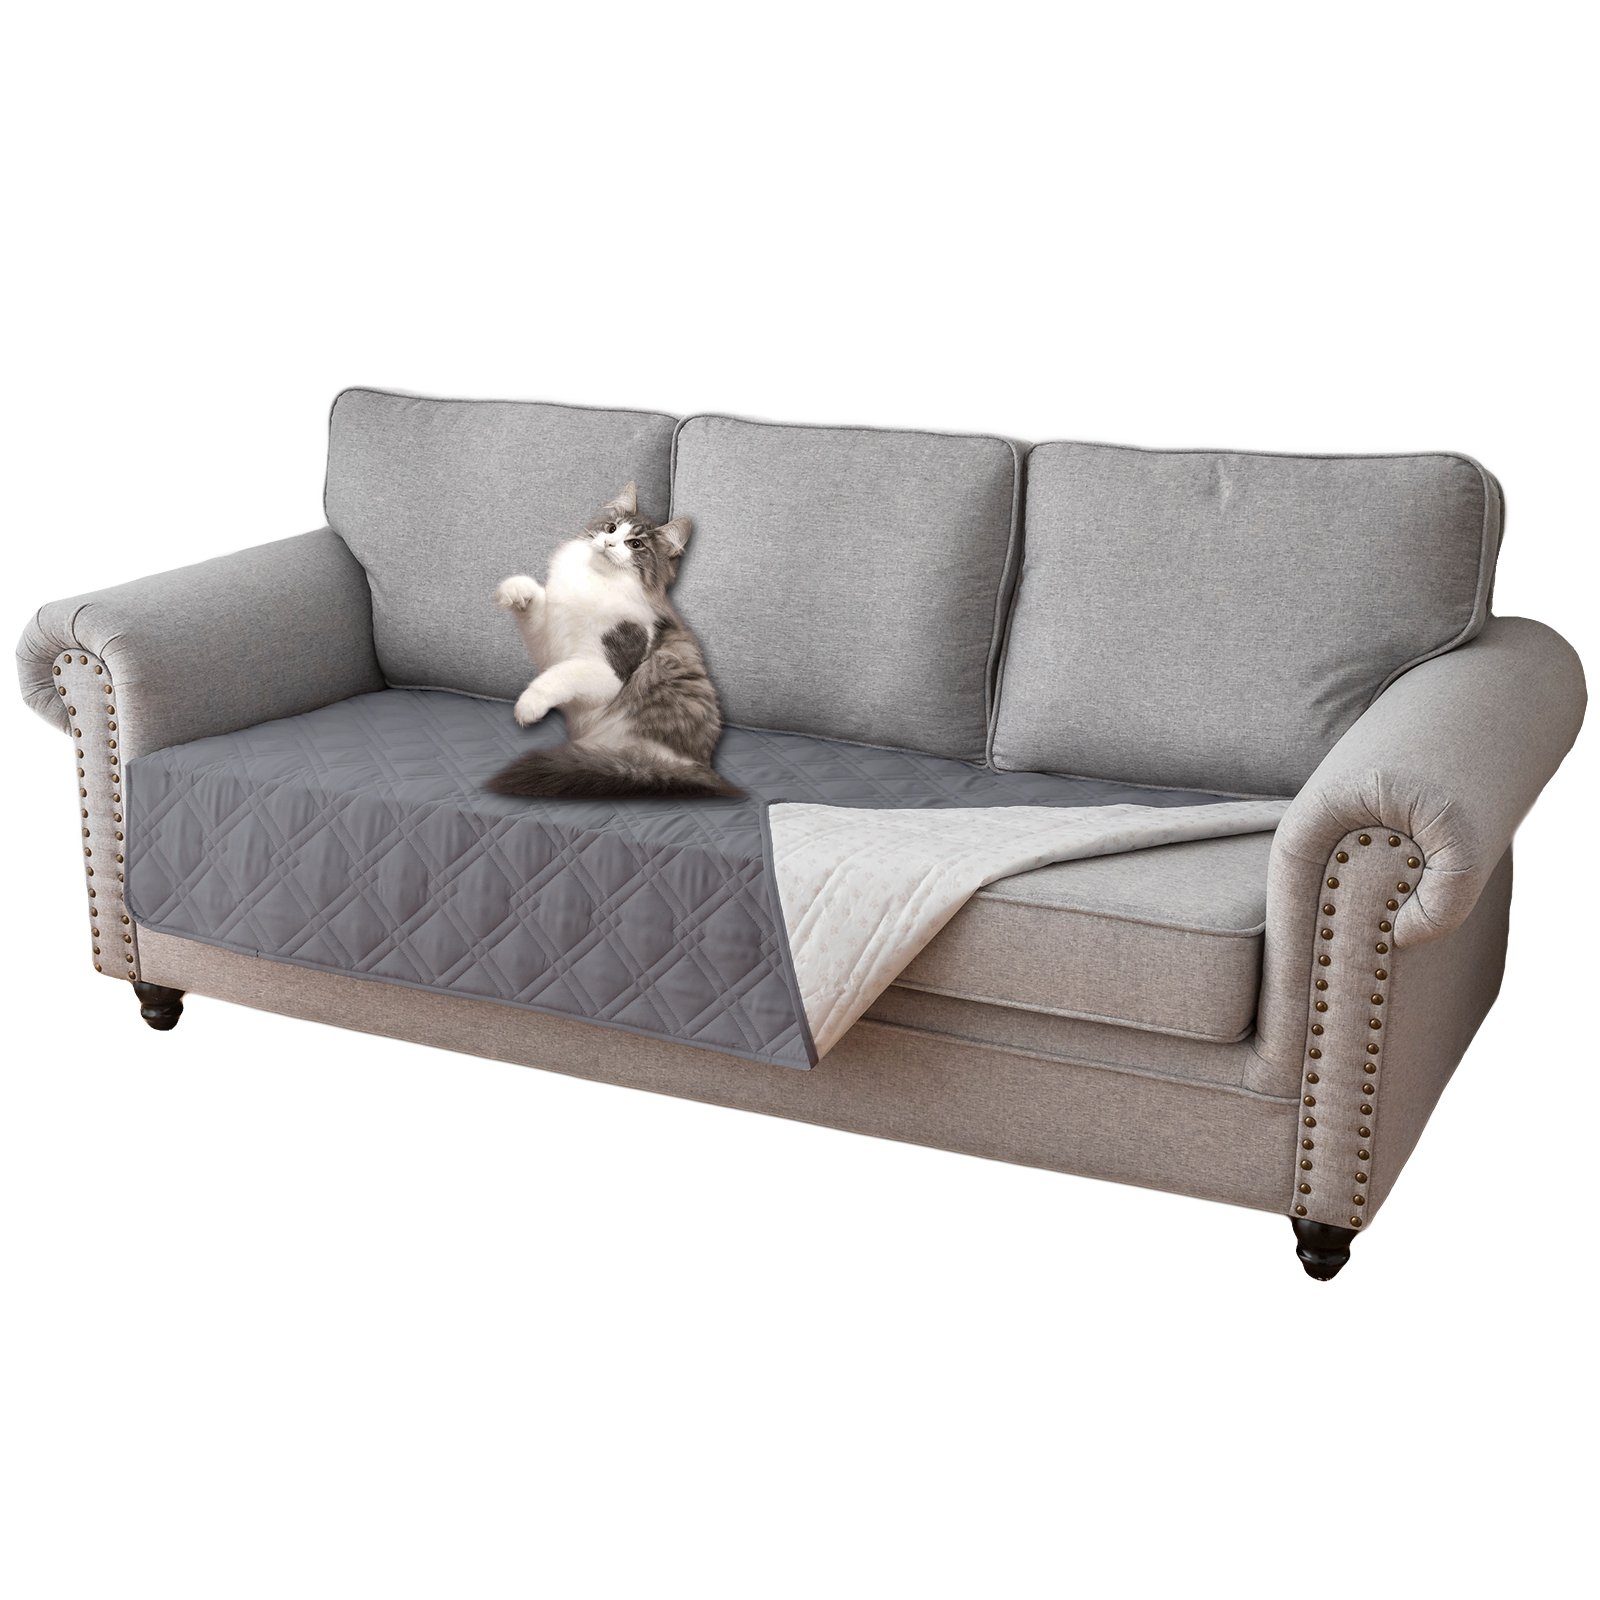 Sofabezug 100% Wasserdicht, Antirutsch, für Sunicol, Sofa 5 Katzen Haustier Abdeckung, Grau Haustiere und Hunde Schonbezug Sitzer, Überwurf